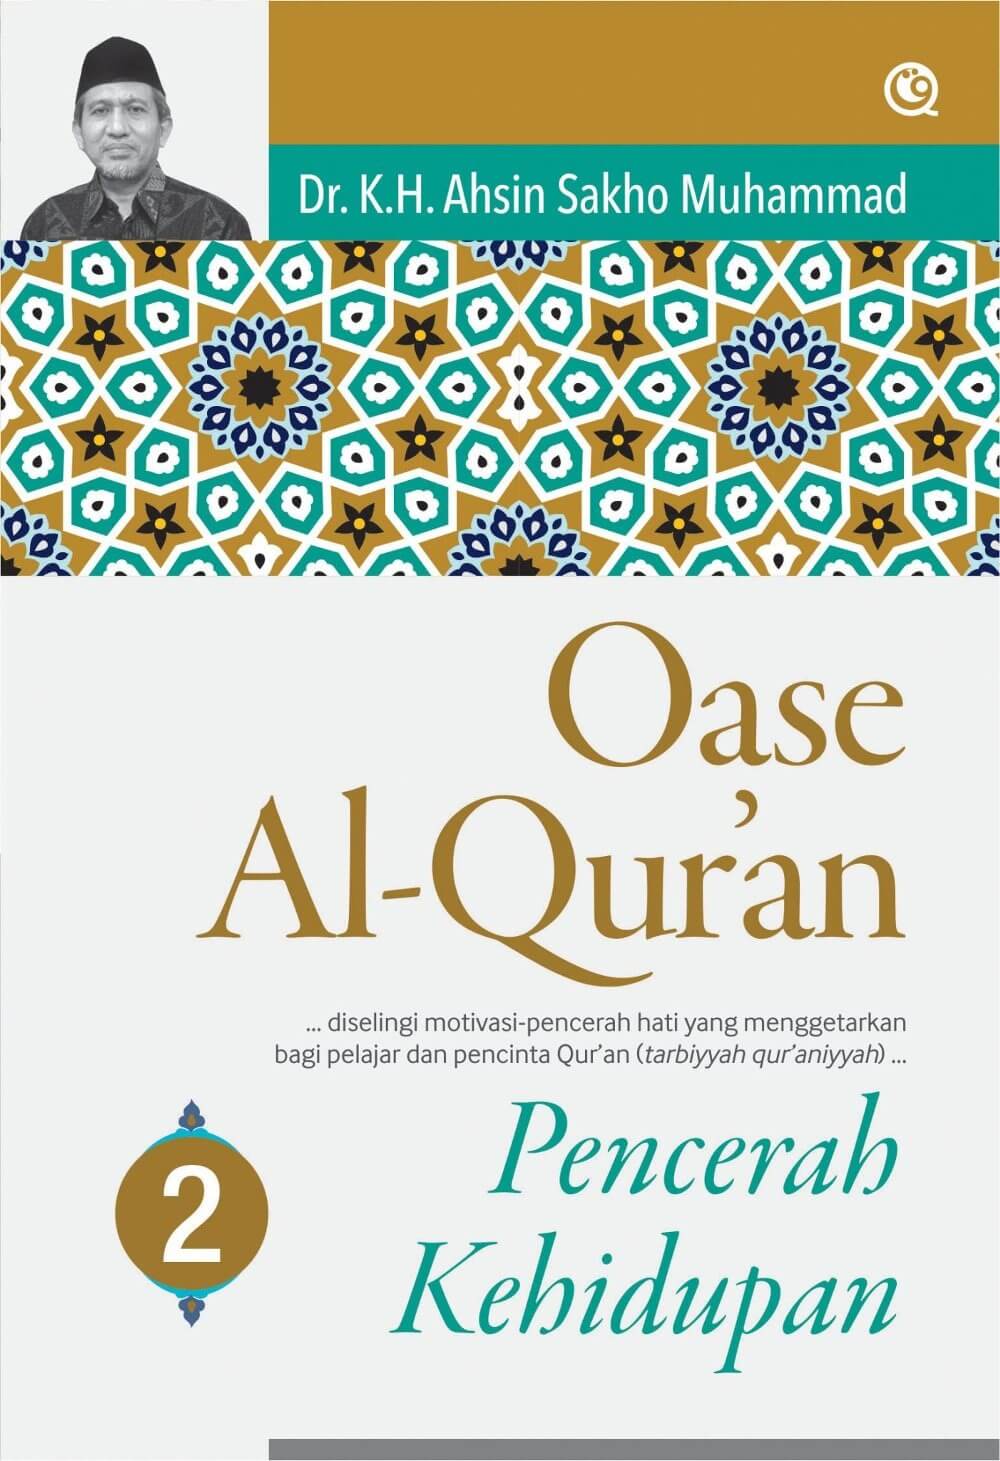 Oase Al-Qur'an :  pencerah kehidupan